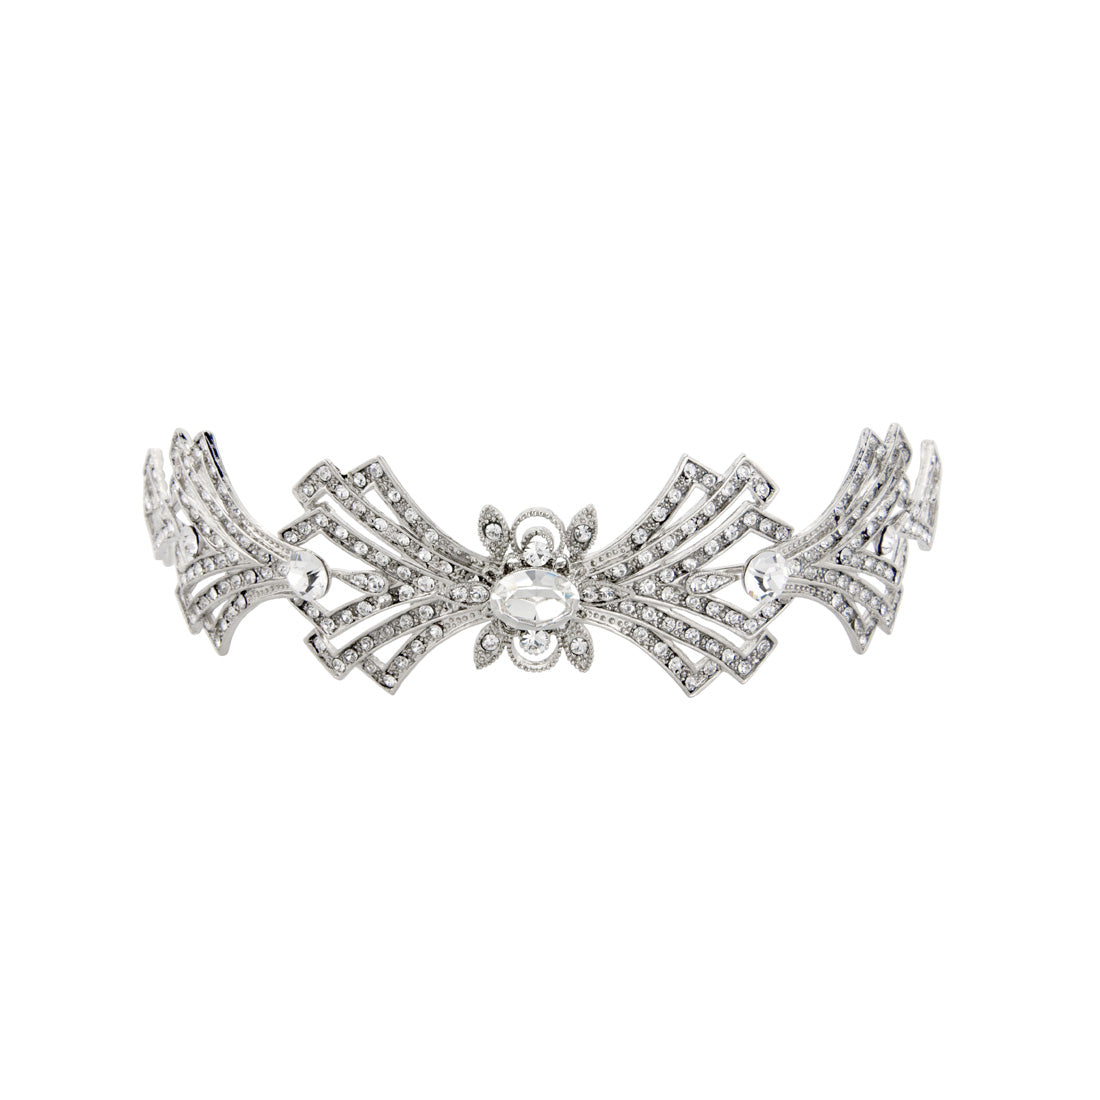 Deco Extravagance Vintage Wedding Tiara Seen on Downton Abbey